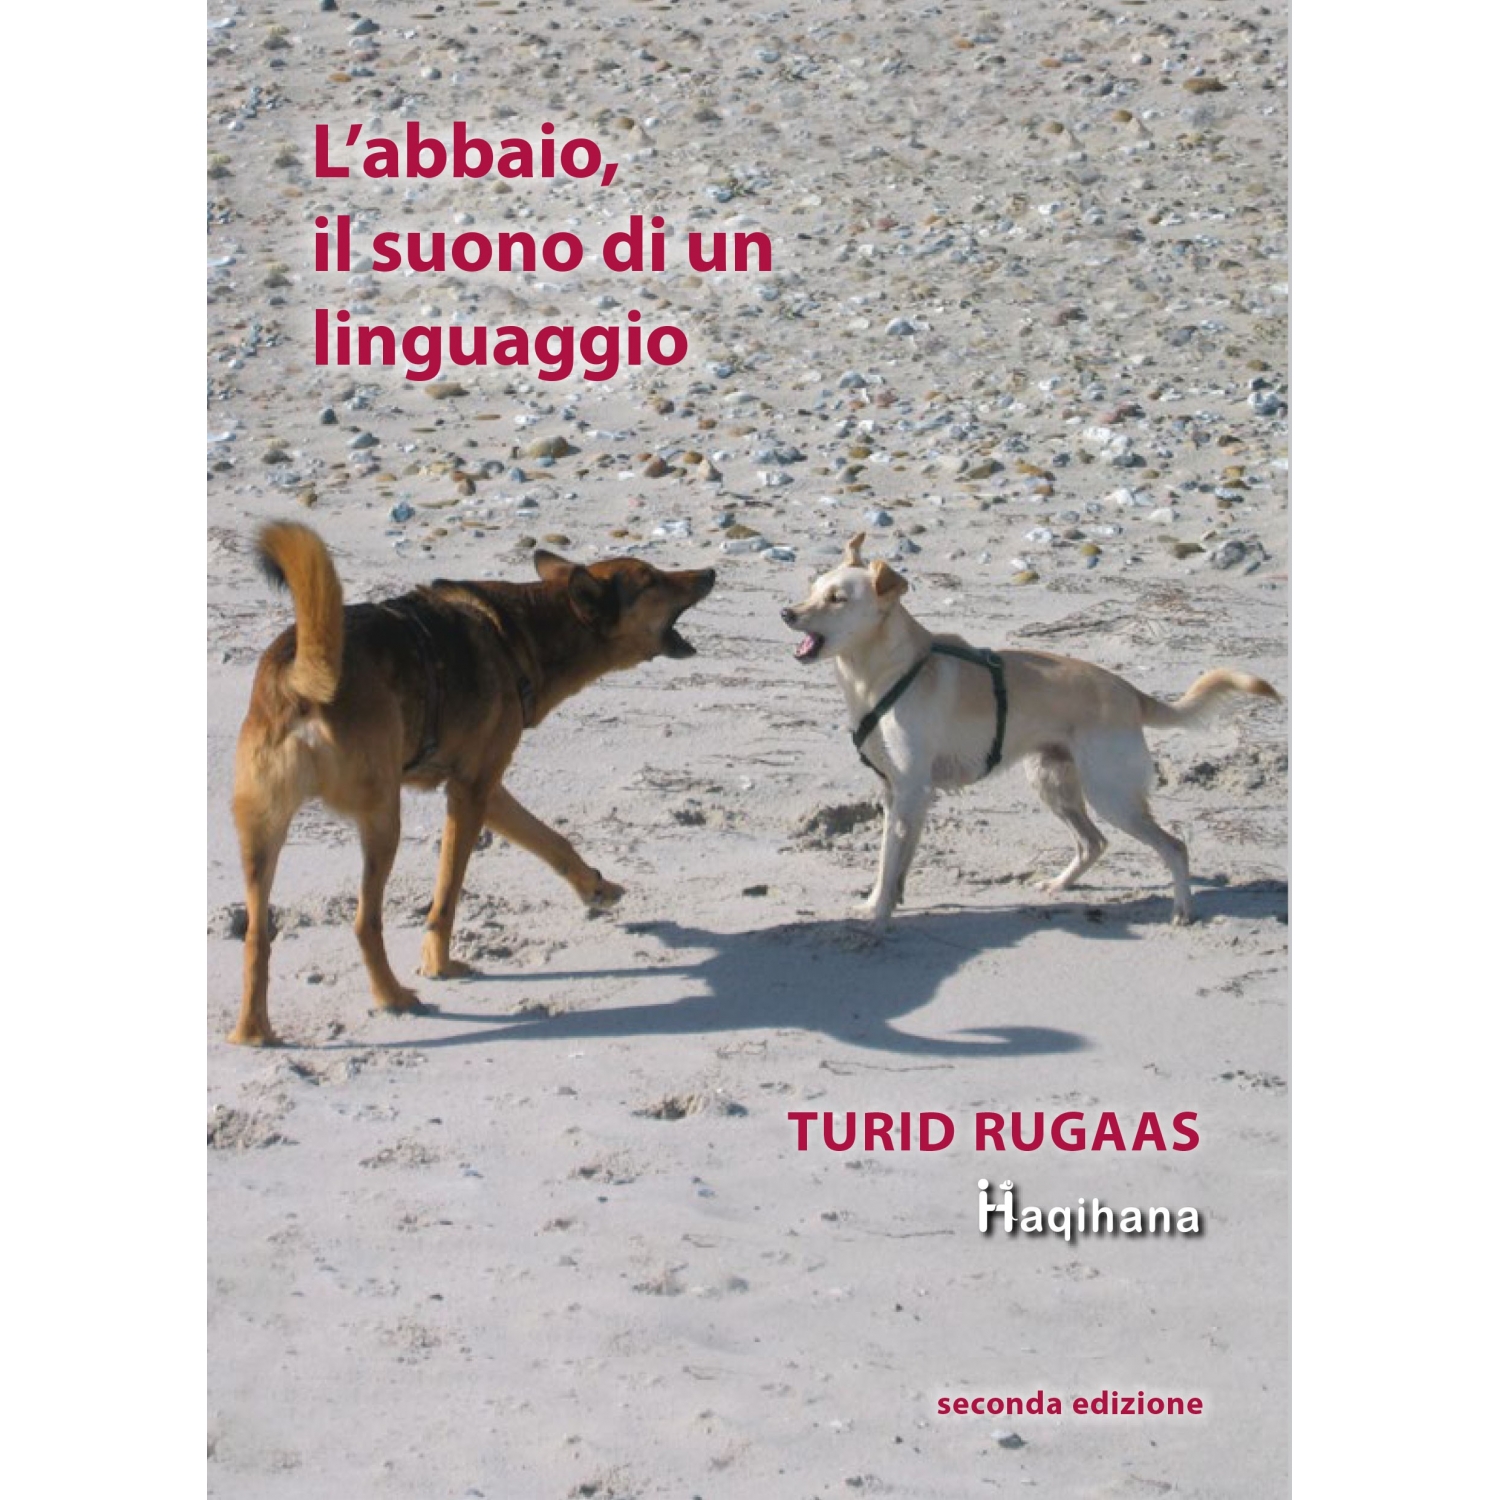 L'abbaio, il suono di un linguaggio - second edition (ITALIAN ONLY)